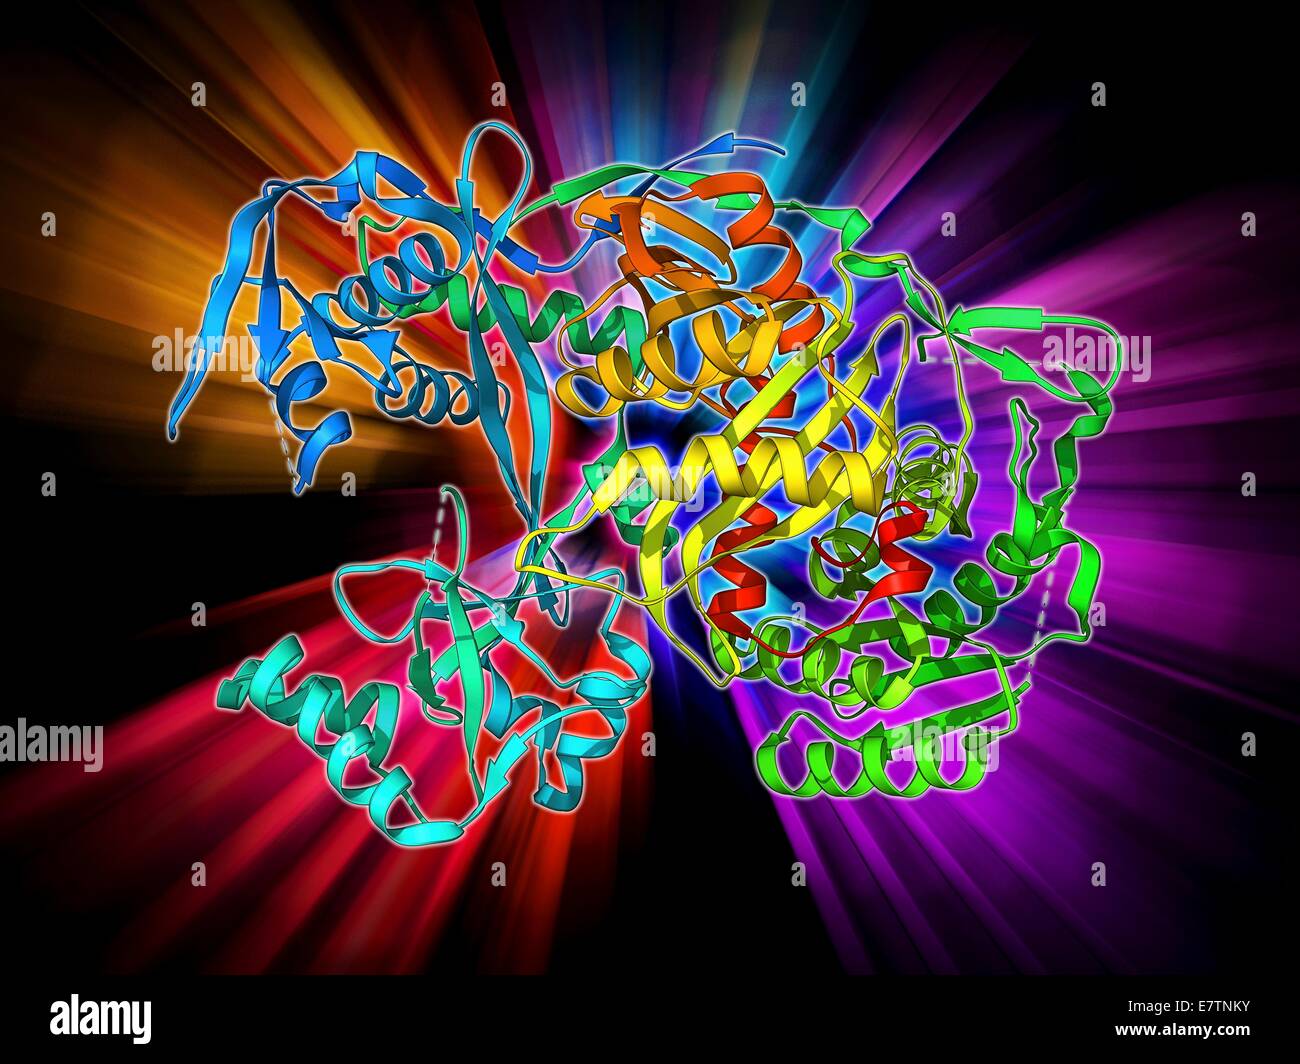 Argonaut Protein, Molekülmodell. Dieses Protein bildet den RNA-induced silencing Komplex (RISC) sowie ein kleines Molekül für interferierende RNA (Ribonukleinsäure). RISC spielt eine Rolle bei der Genregulation und Verteidigung gegen virale Infektion. Stockfoto